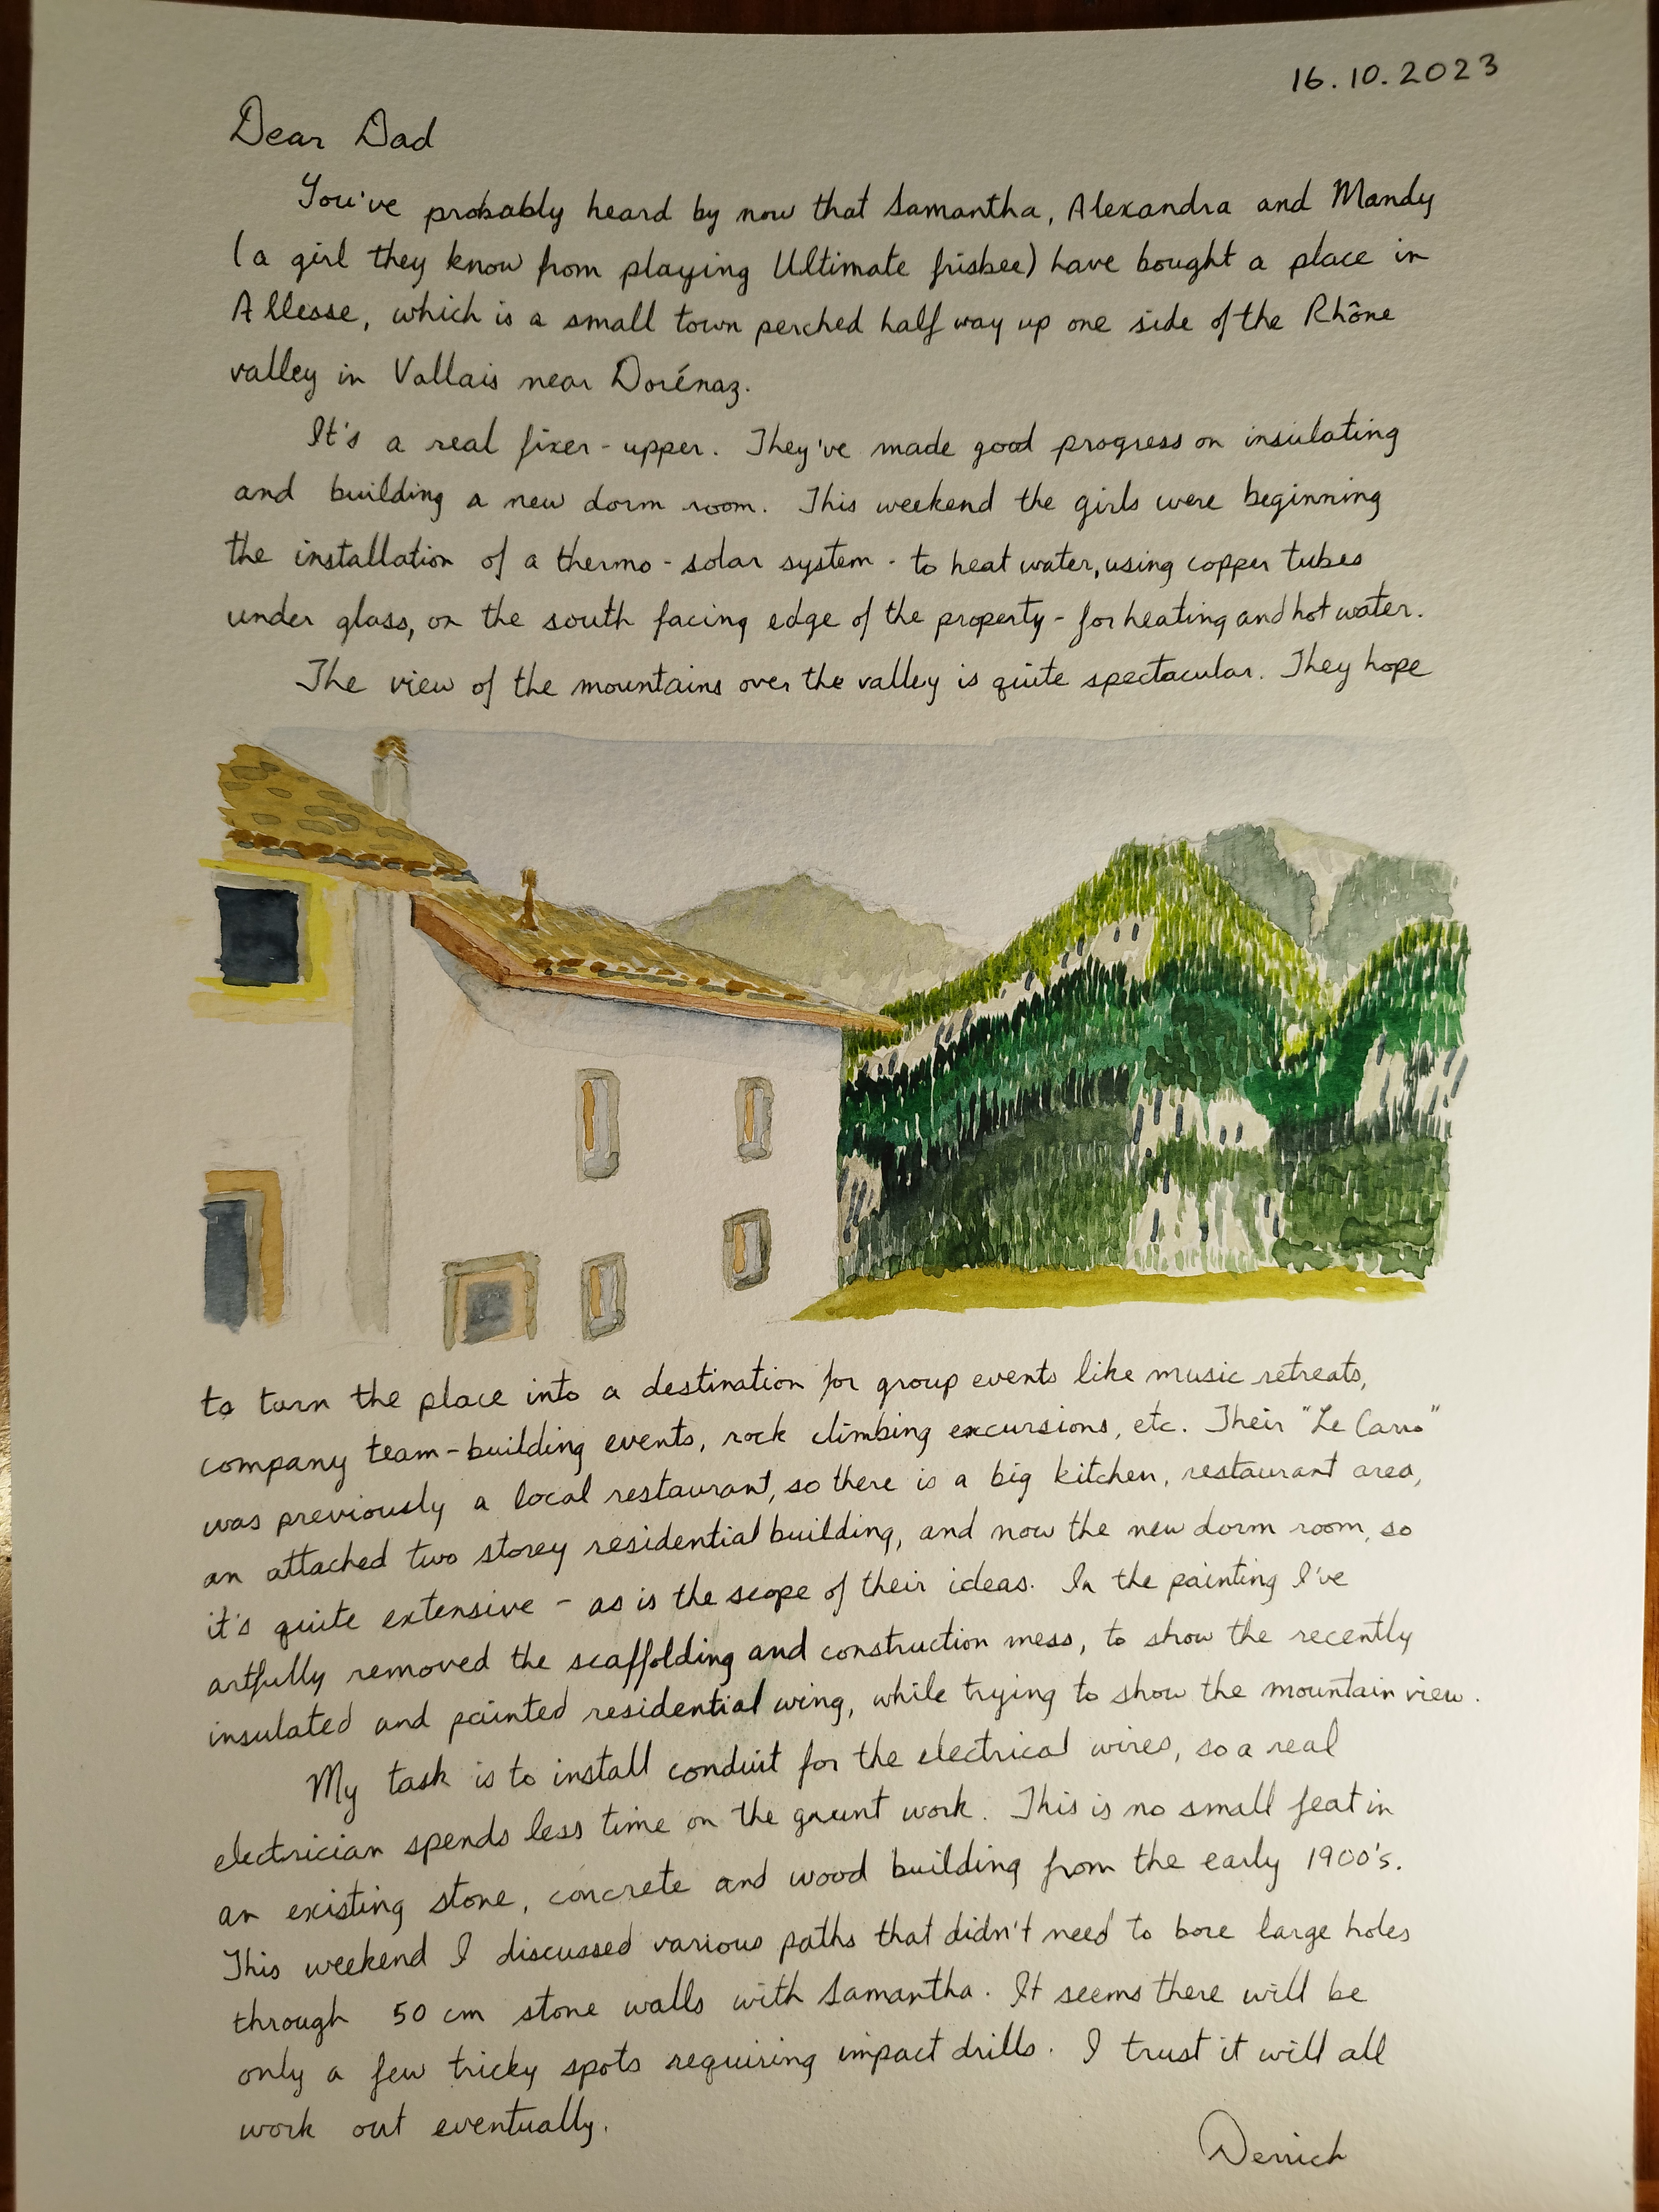 cursive letter about Le Carro